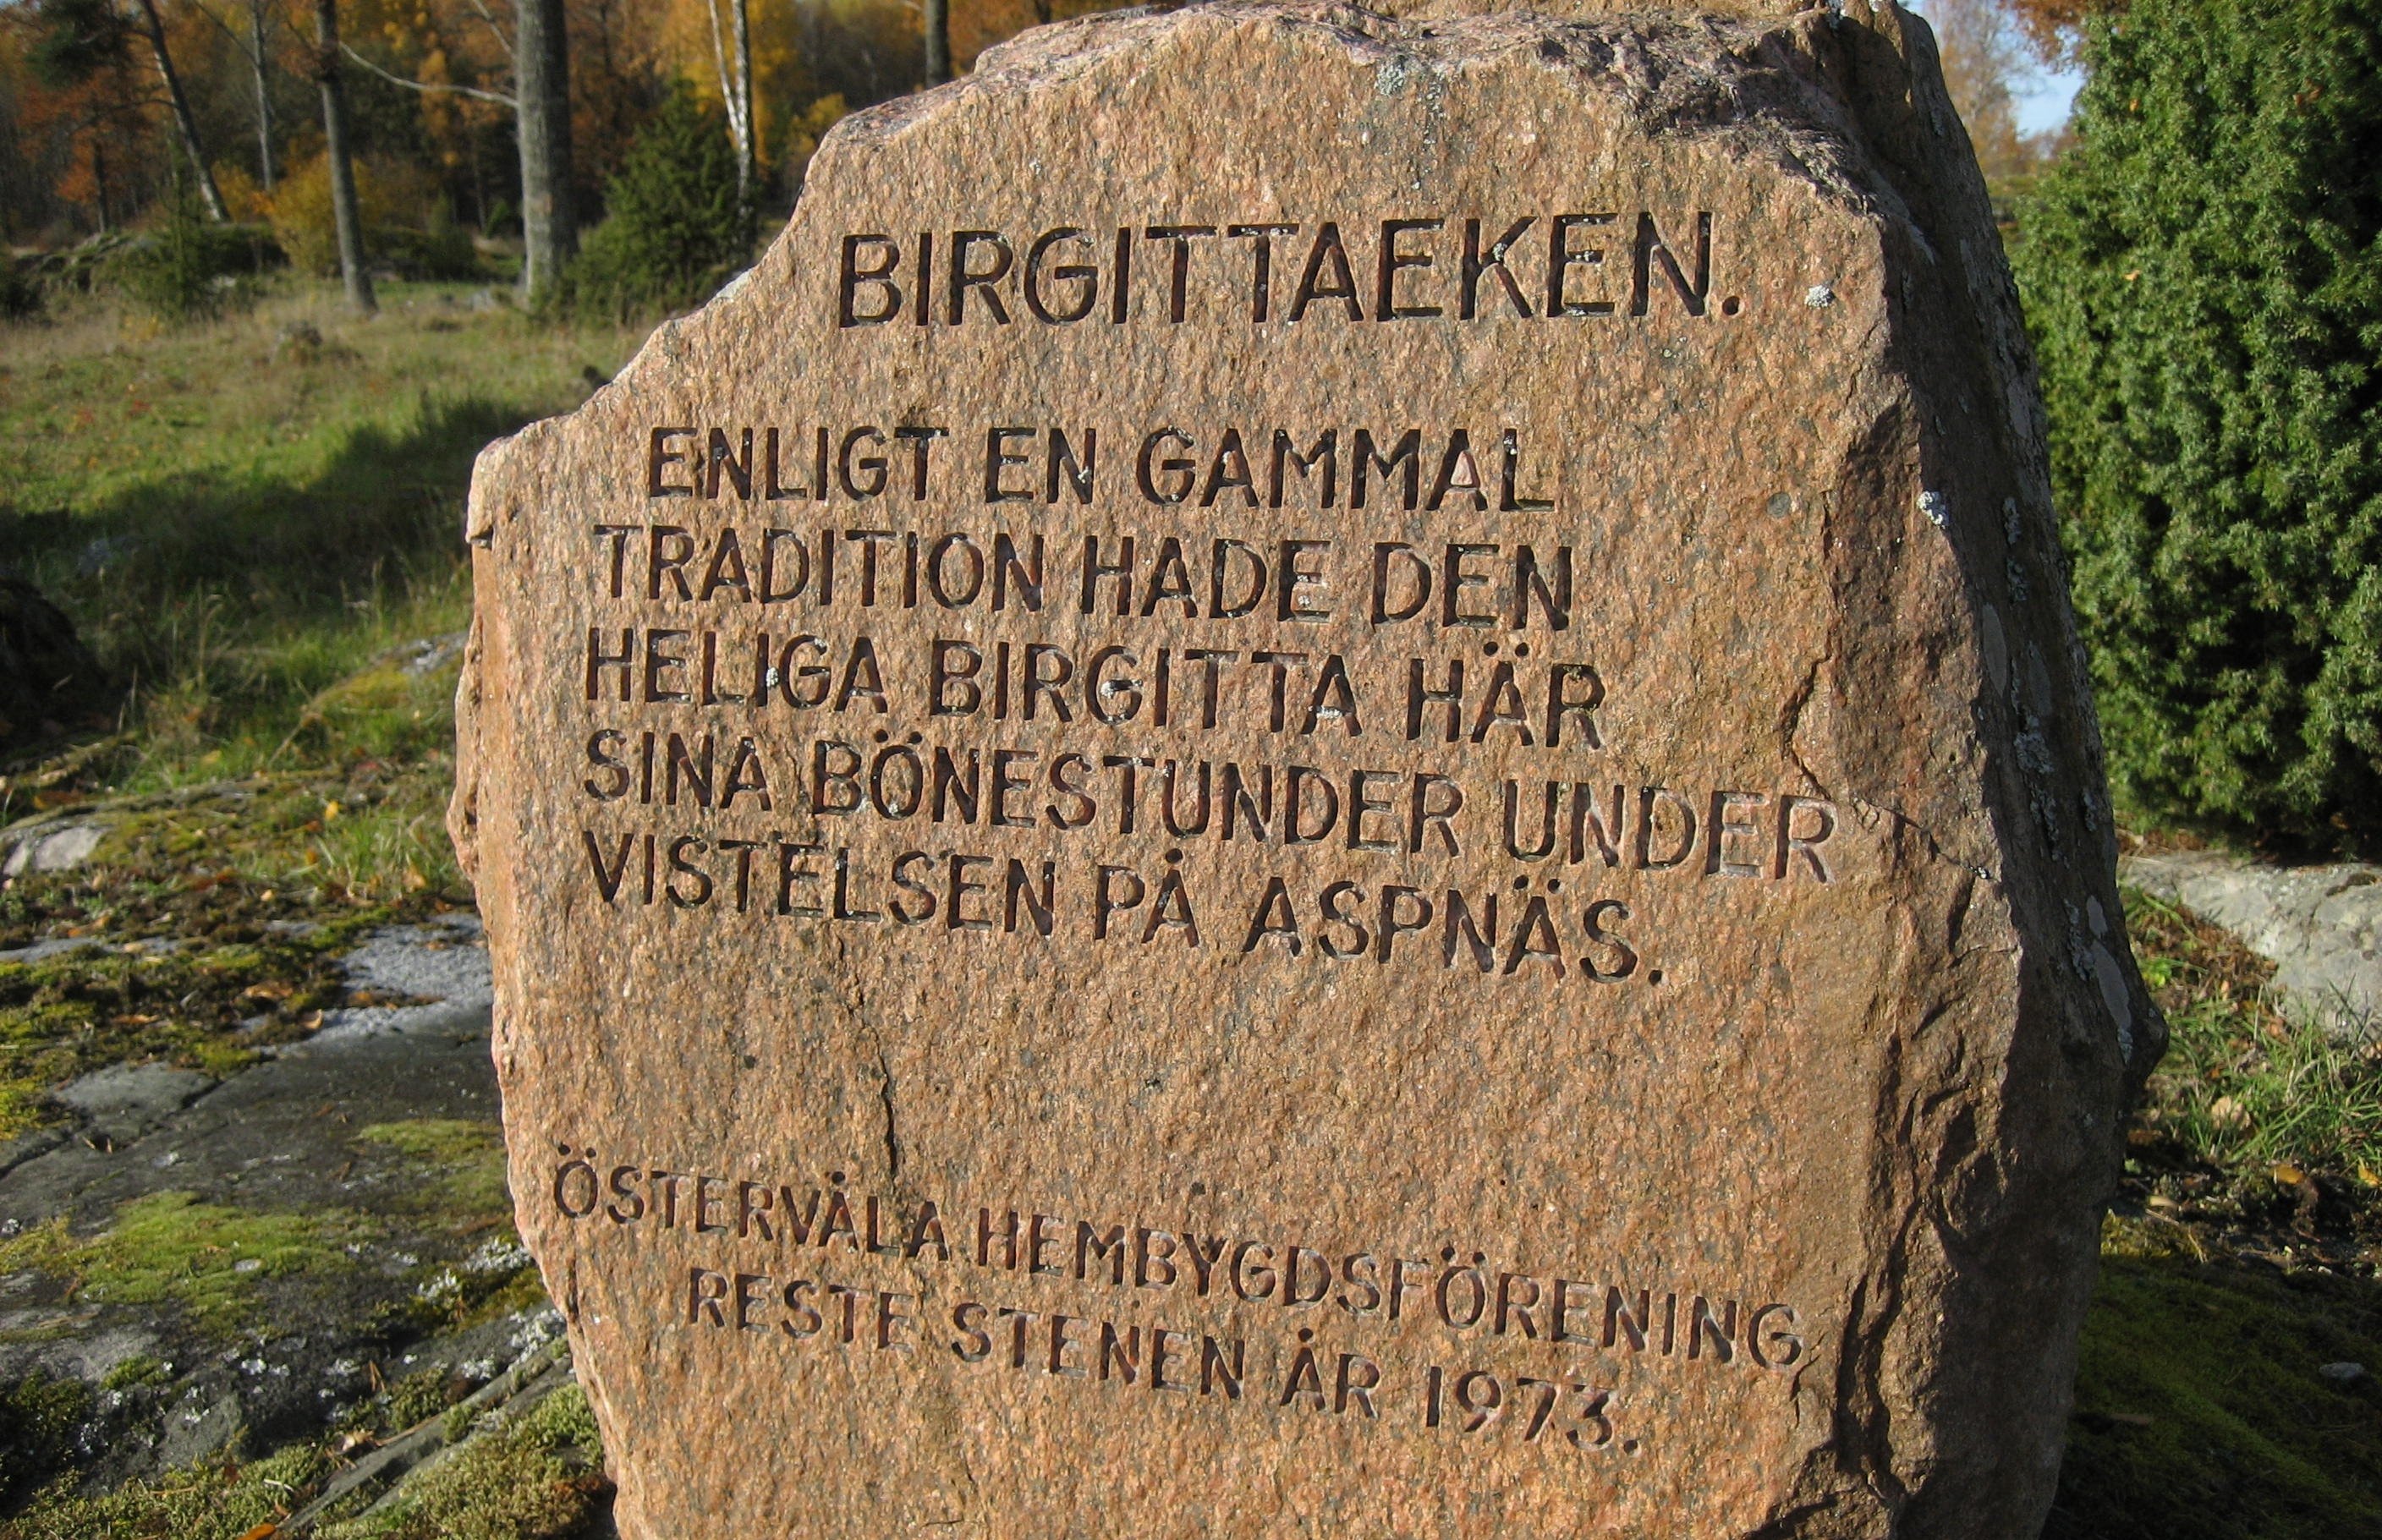 Närbild på en stor sten med inristad text. Stenen står i naturen med stenar, gräs och träd runtomkring sig.